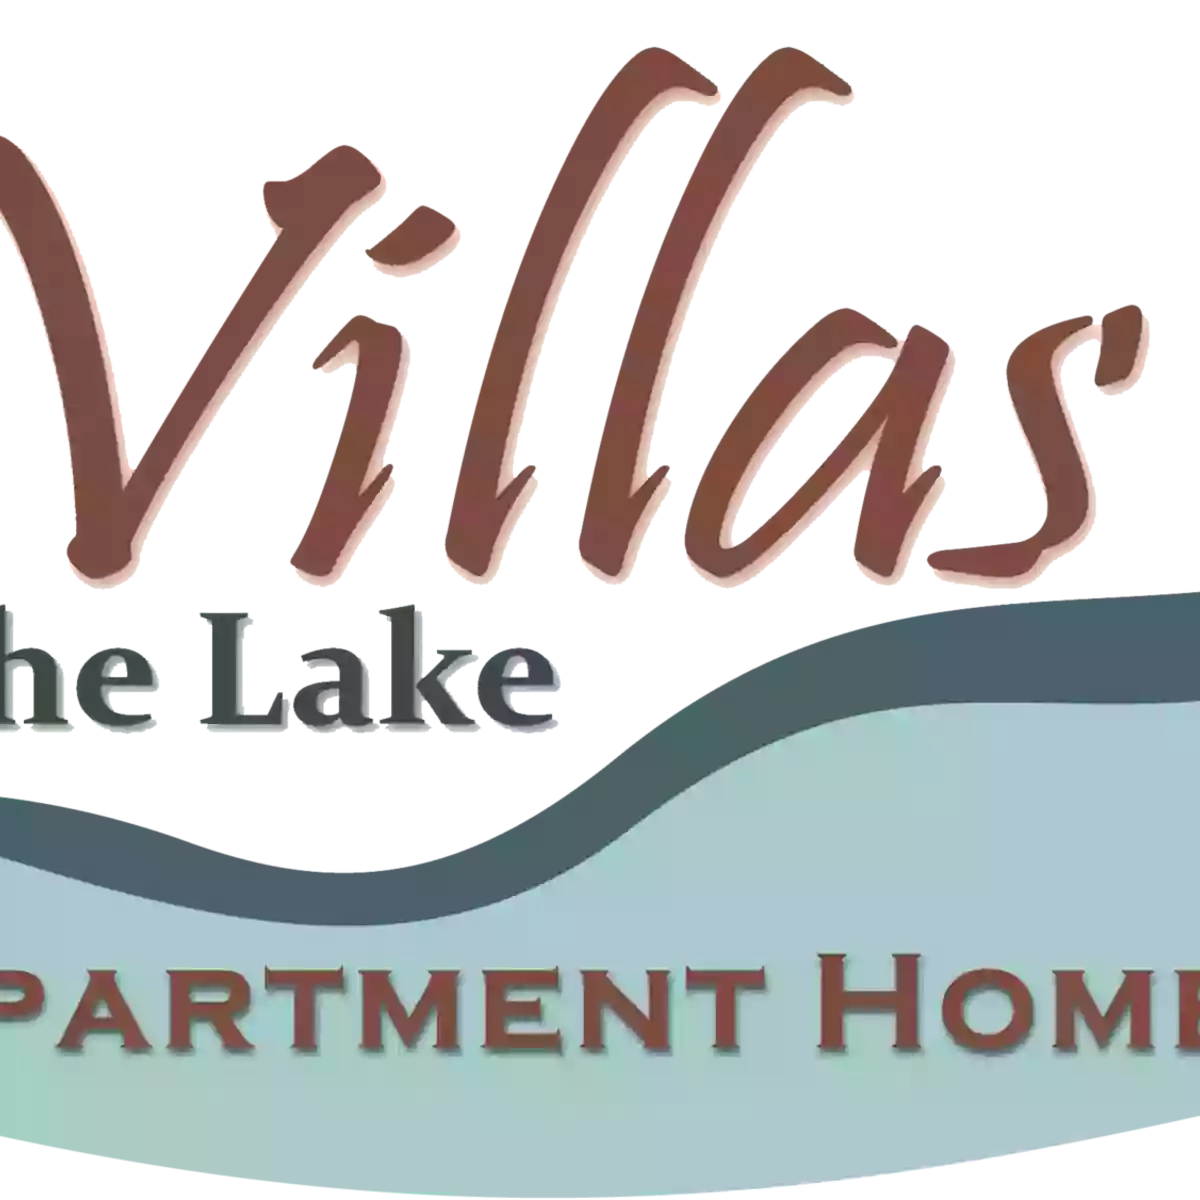 Villas by the Lake